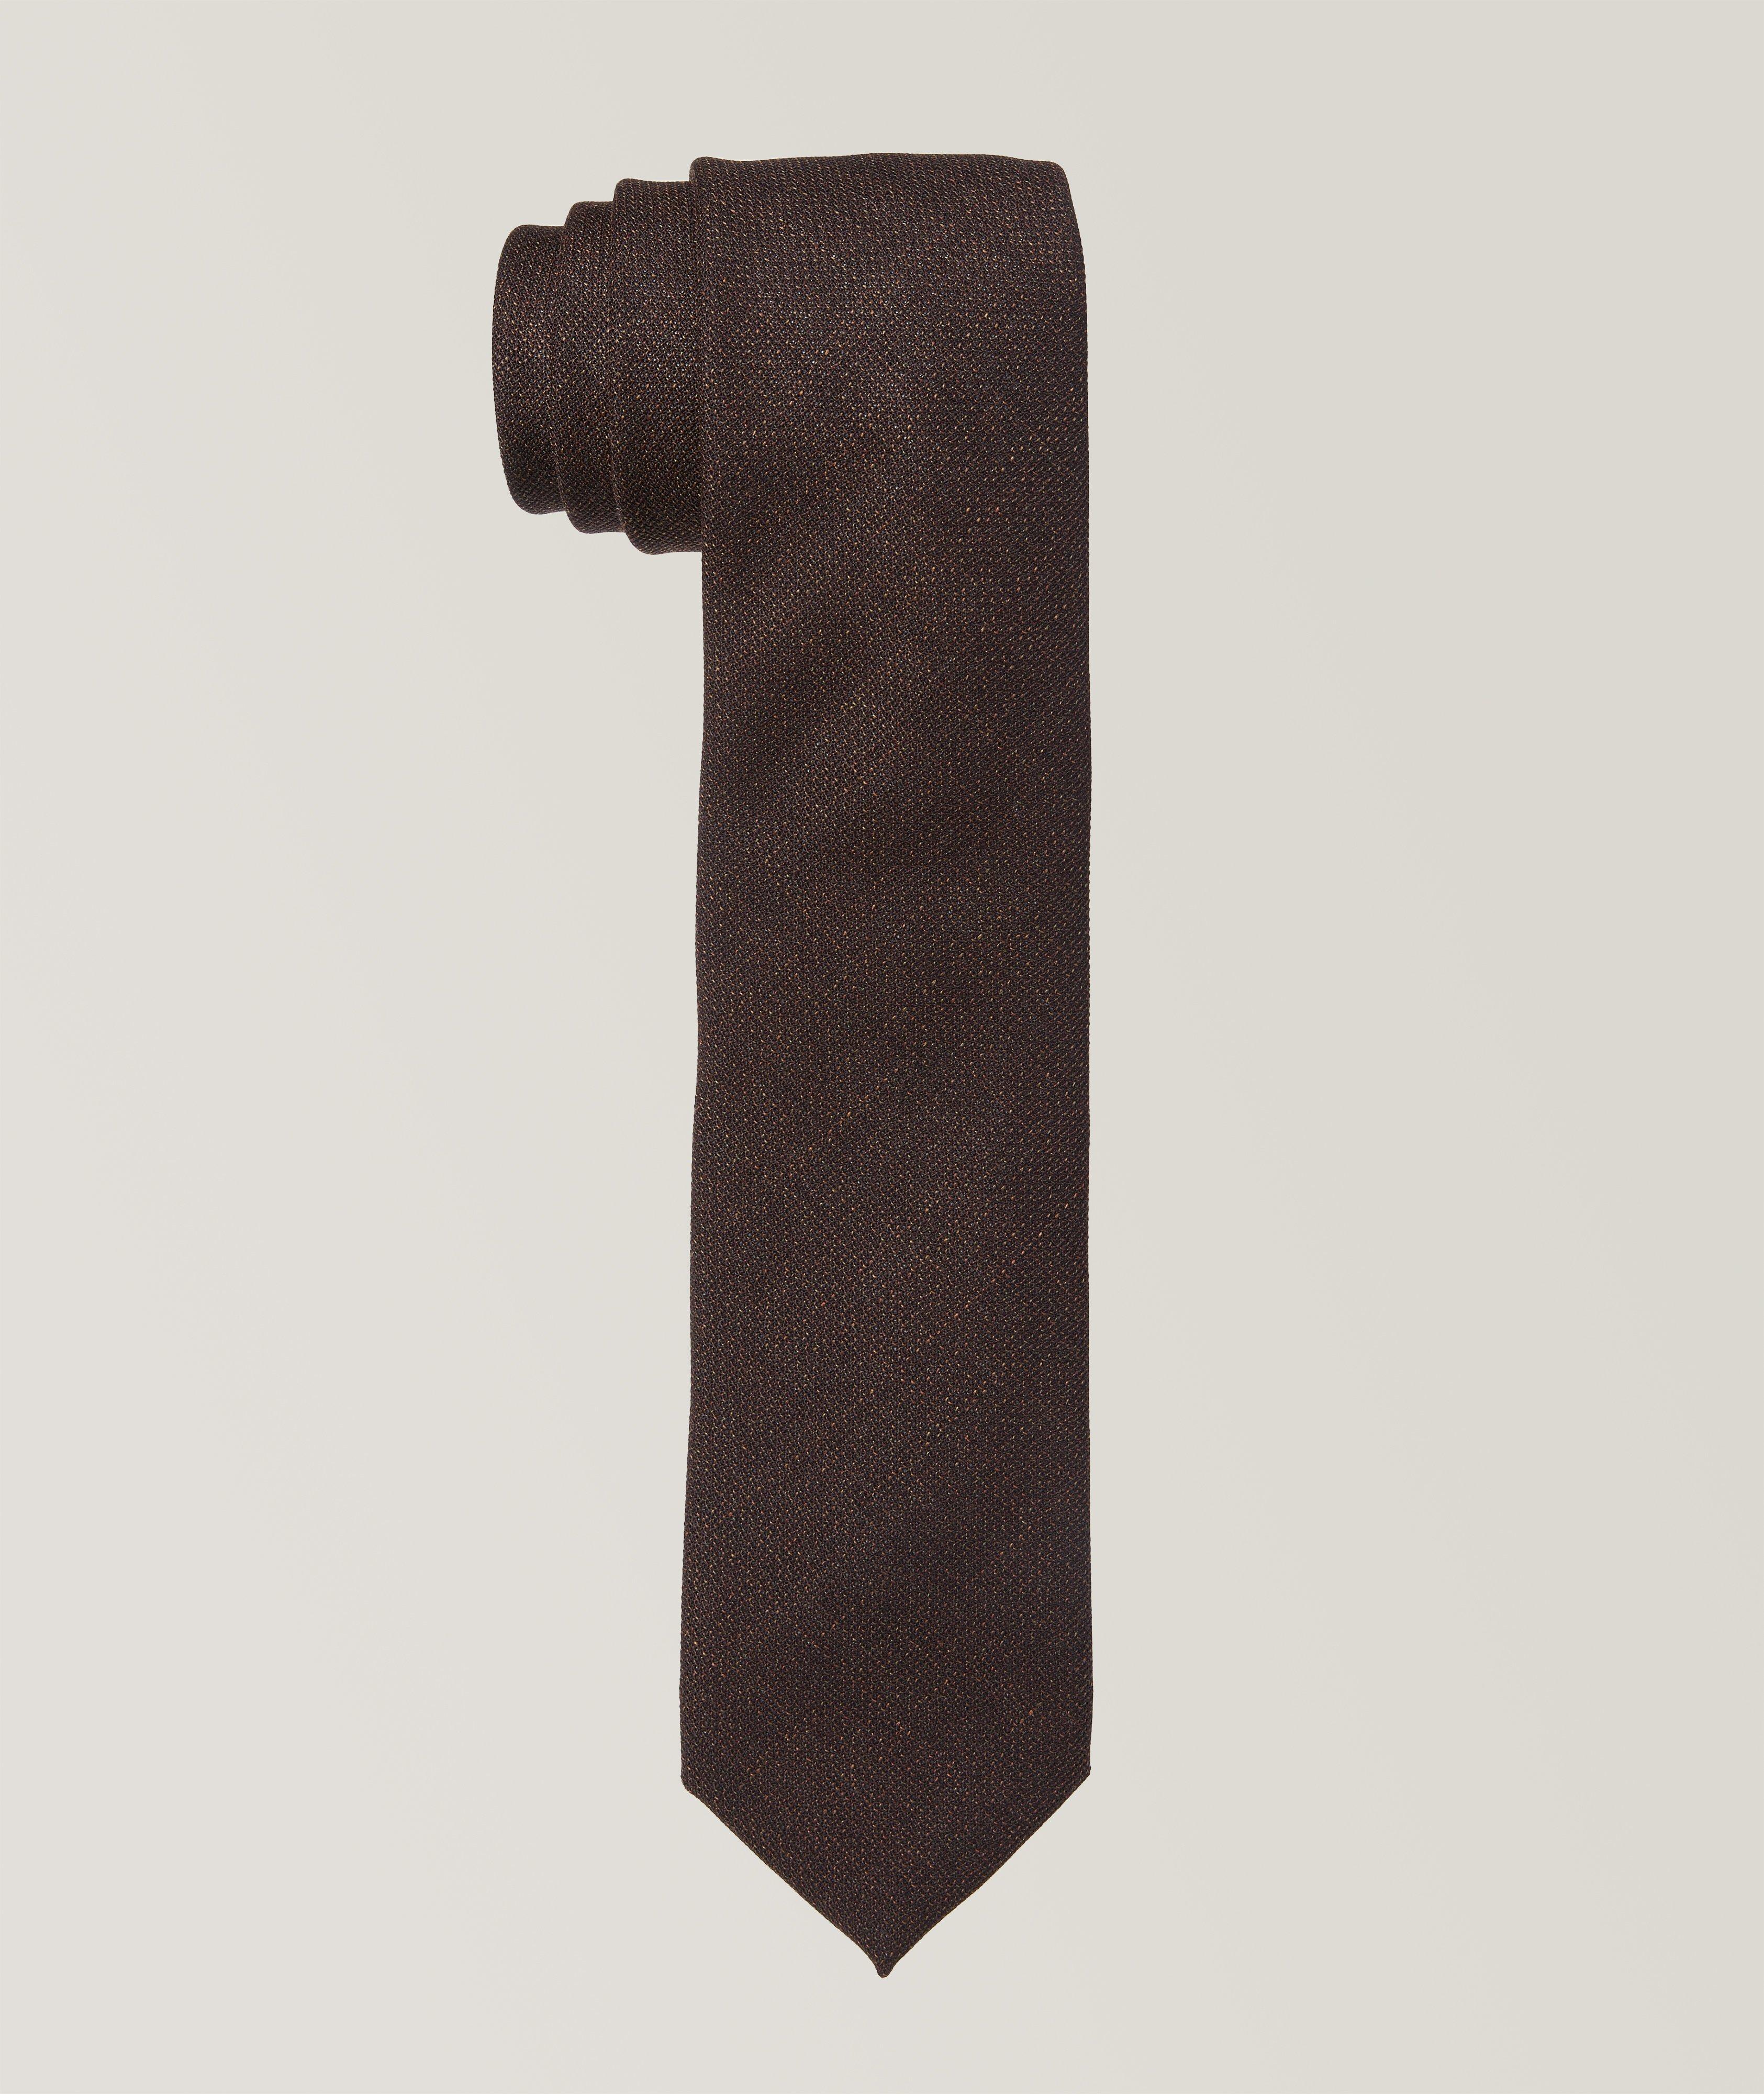 Cravate en laine texturée image 0